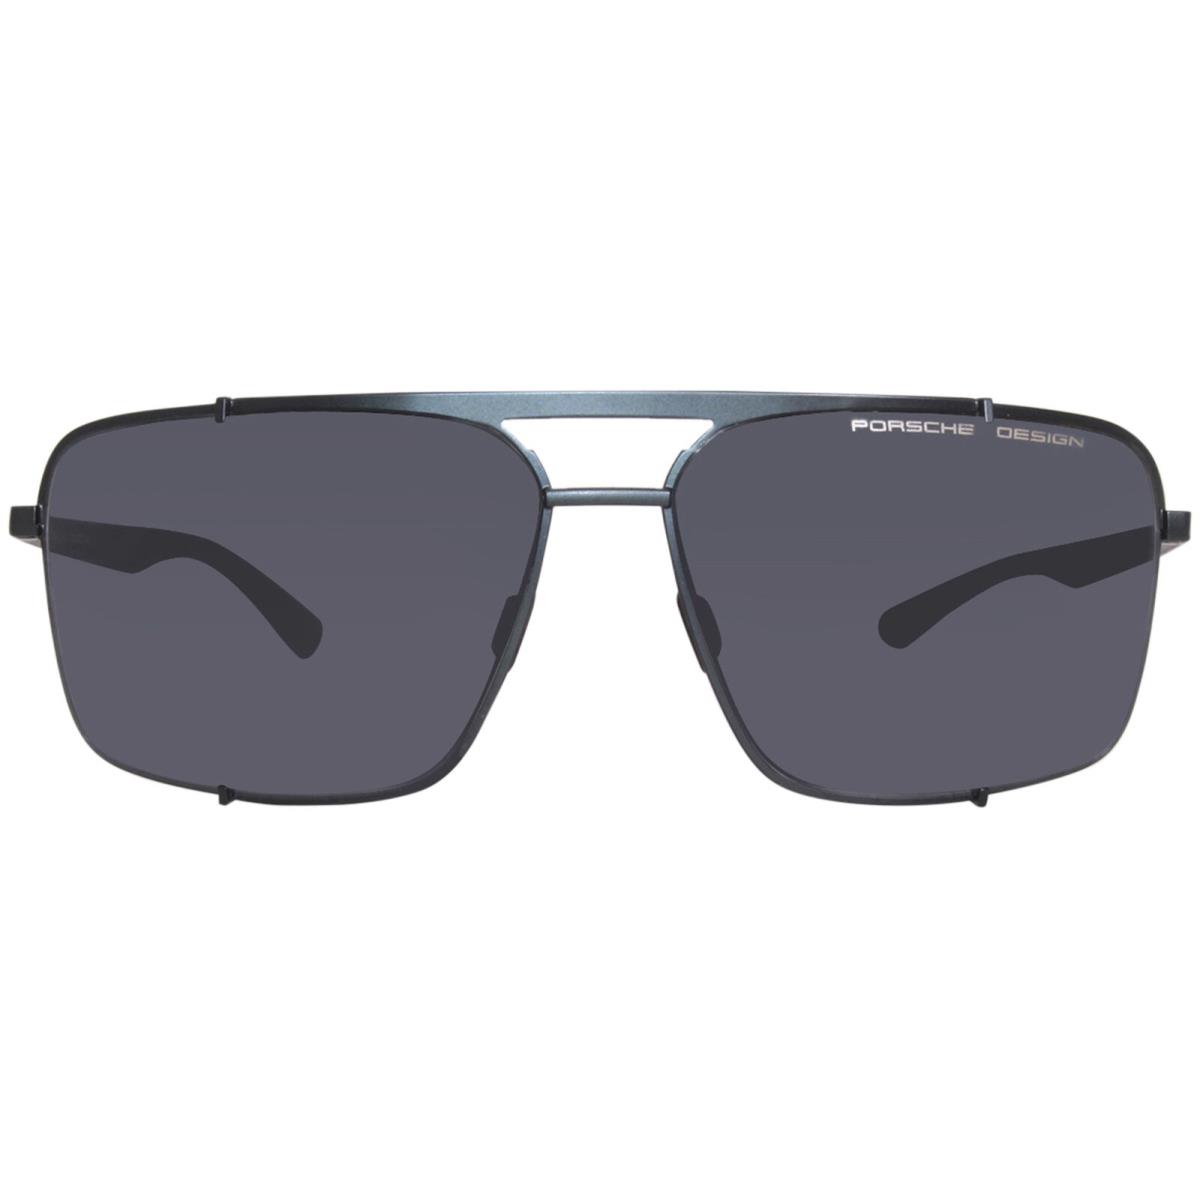 Porsche Design P8919-C Sunglasses Men`s Blue/black Mirror Pilot 63mm